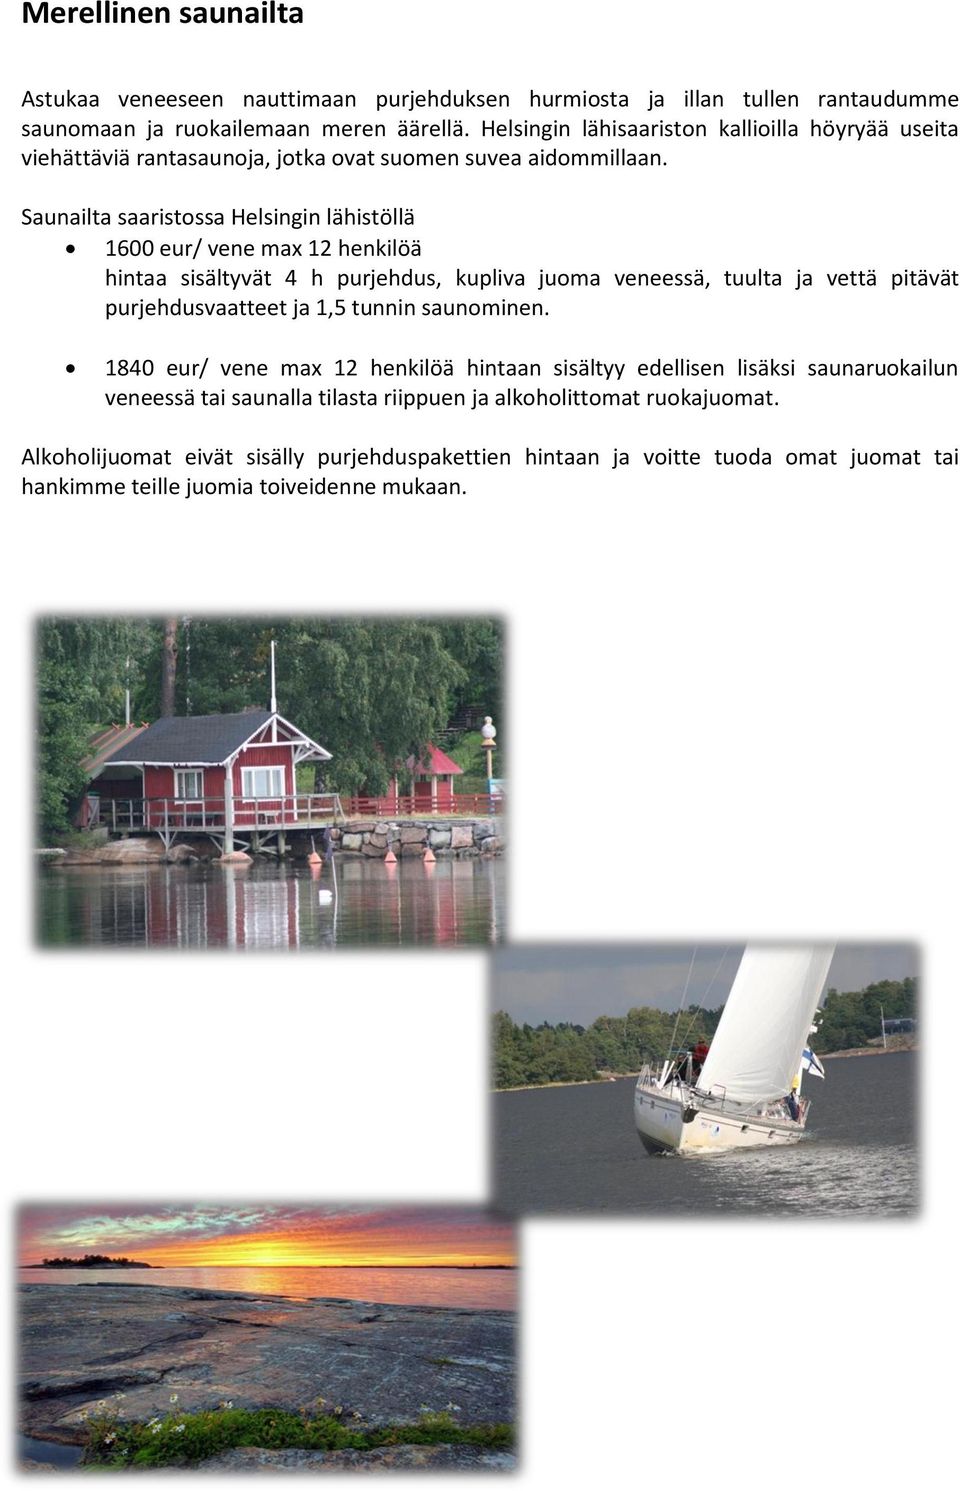 Saunailta saaristossa Helsingin lähistöllä 1600 eur/ vene max 12 henkilöä hintaa sisältyvät 4 h purjehdus, kupliva juoma veneessä, tuulta ja vettä pitävät purjehdusvaatteet ja 1,5